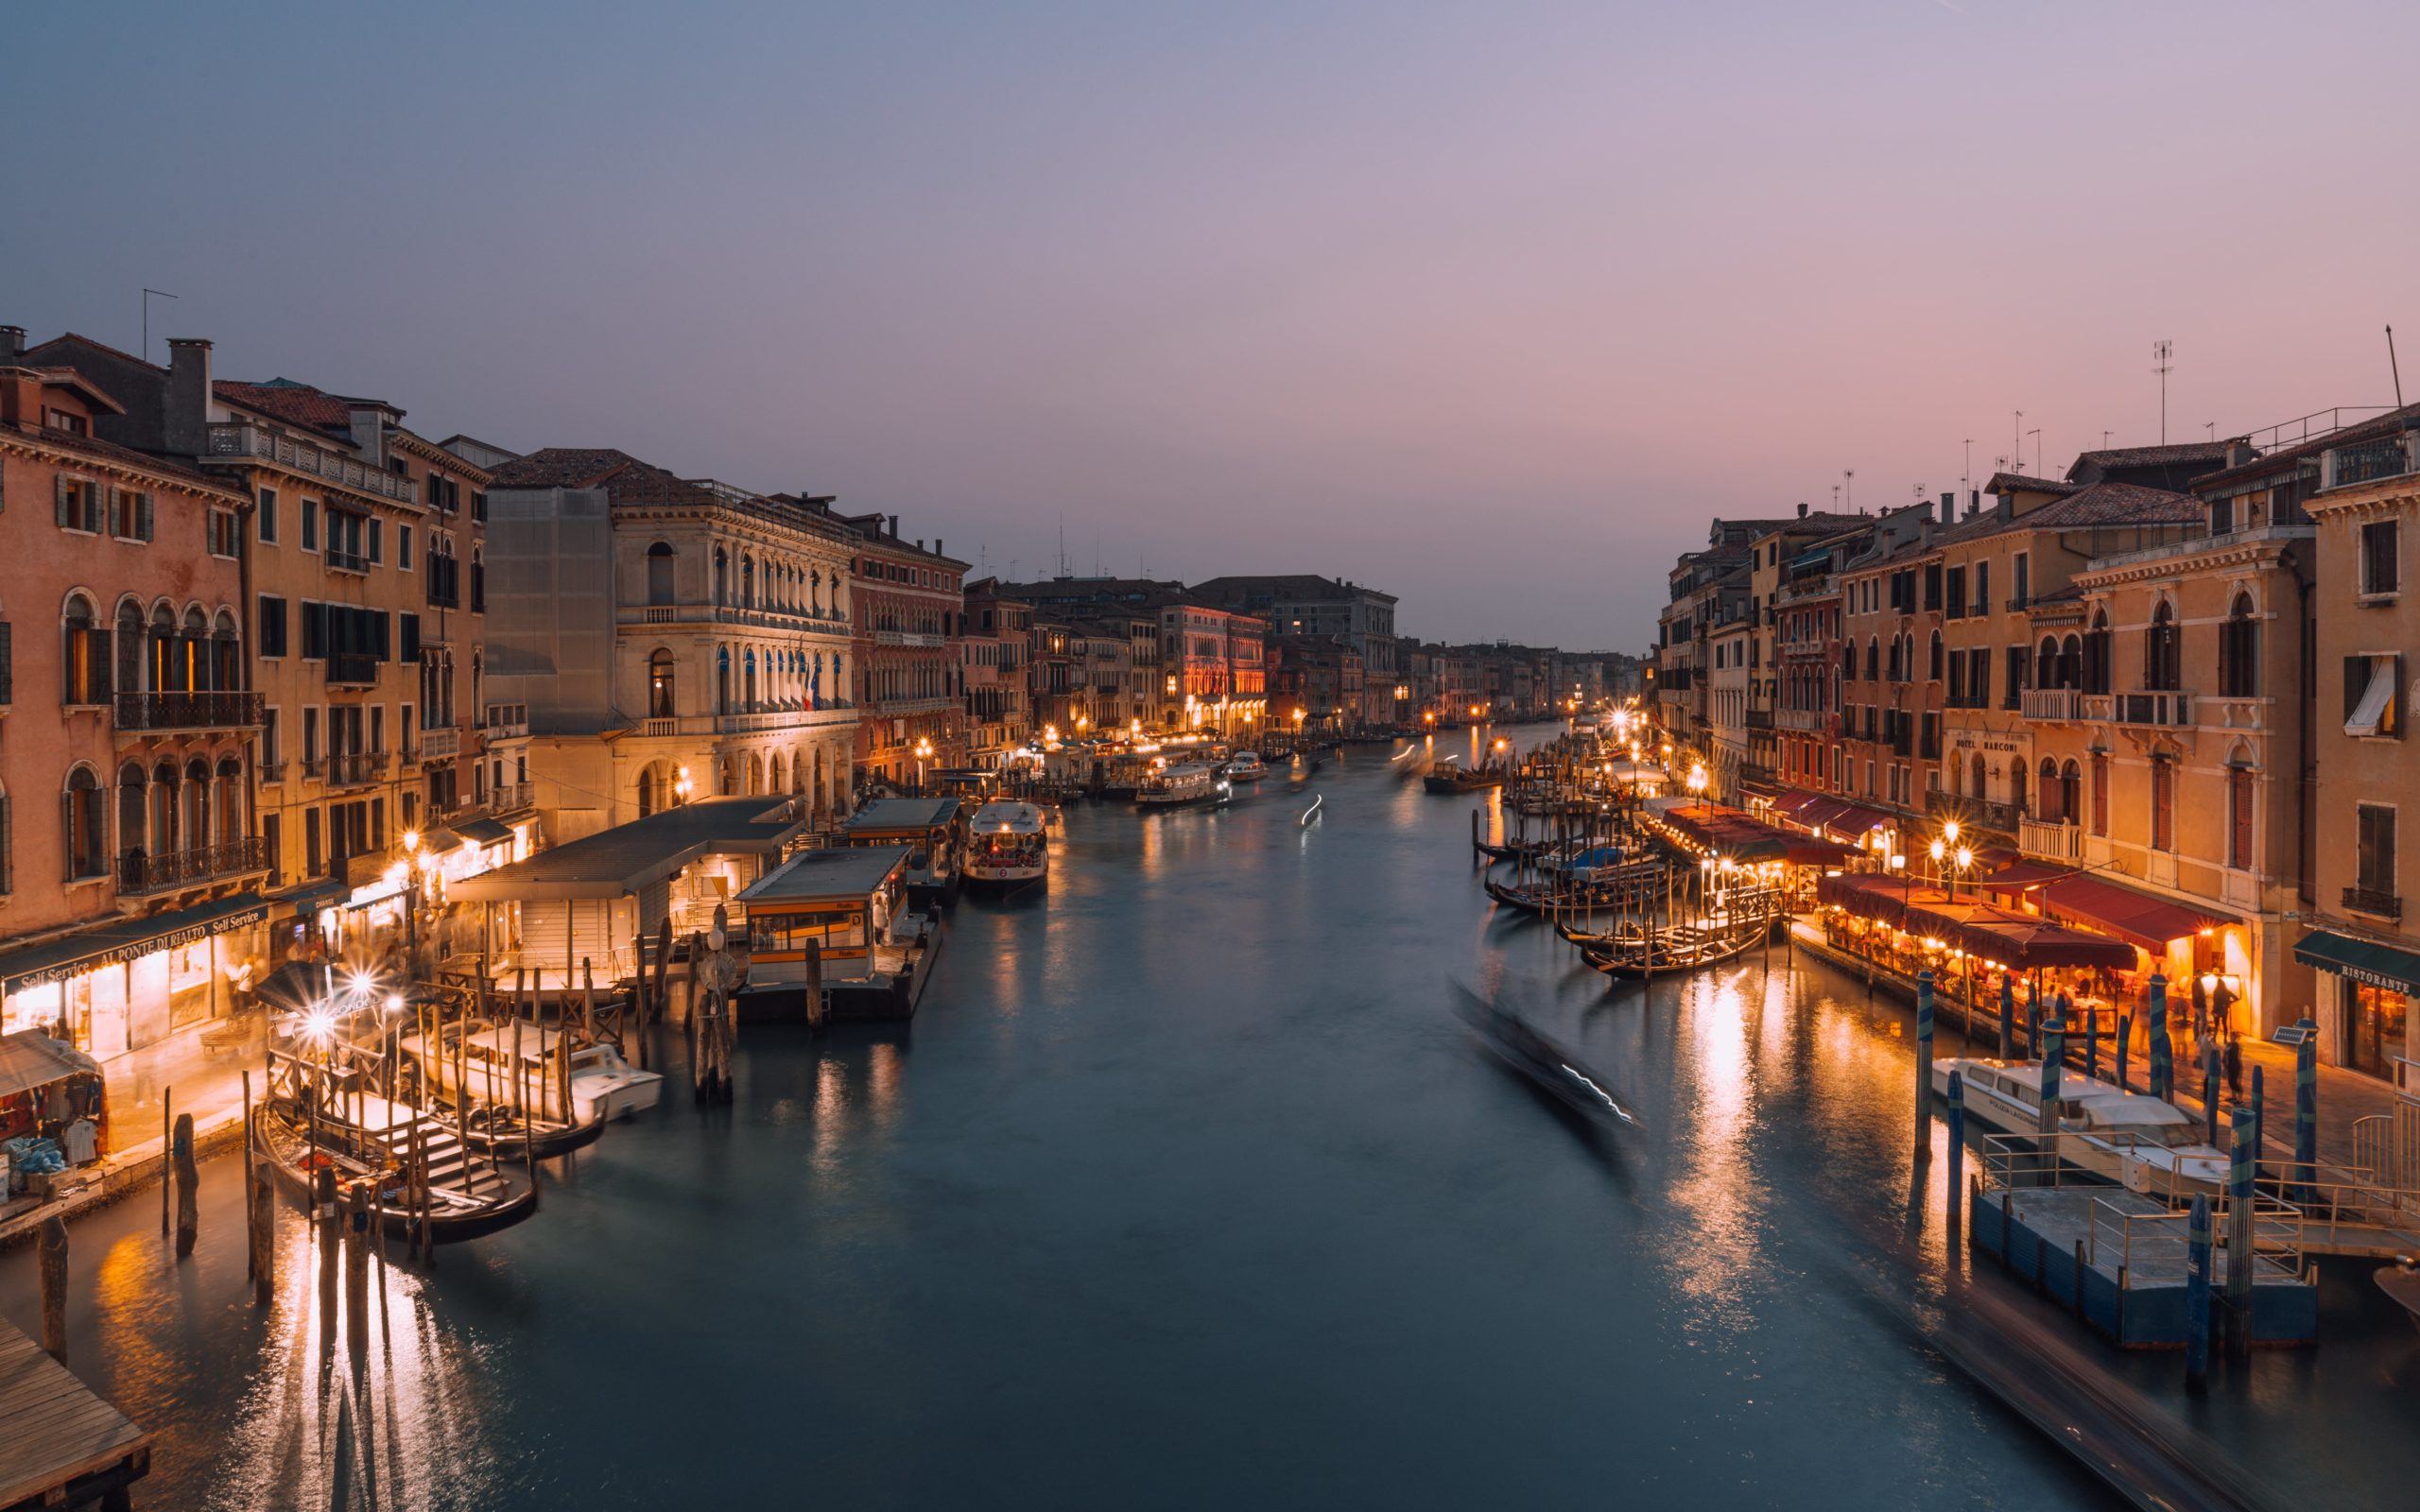 Sunset view of Rialto Bridge in Venice